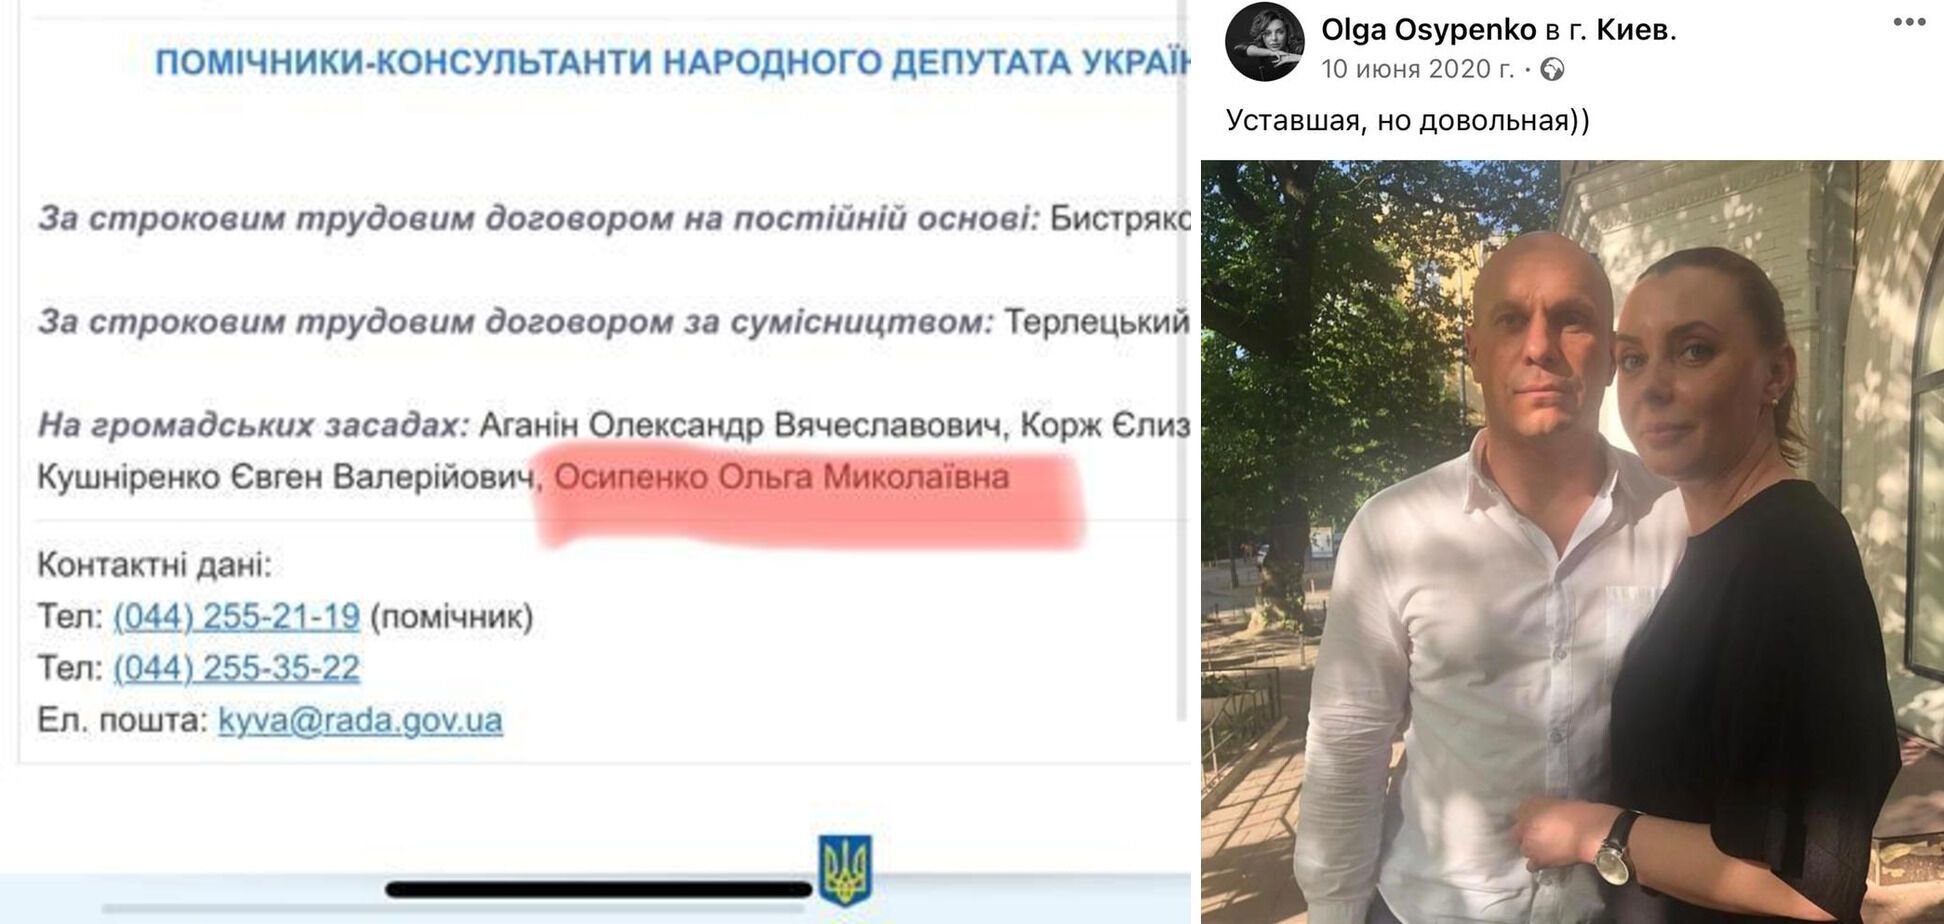 Экс-помощница херсонского нардепа перешла на сторону РФ и баллотируется на псевдовыборах от партии Путина: подробности